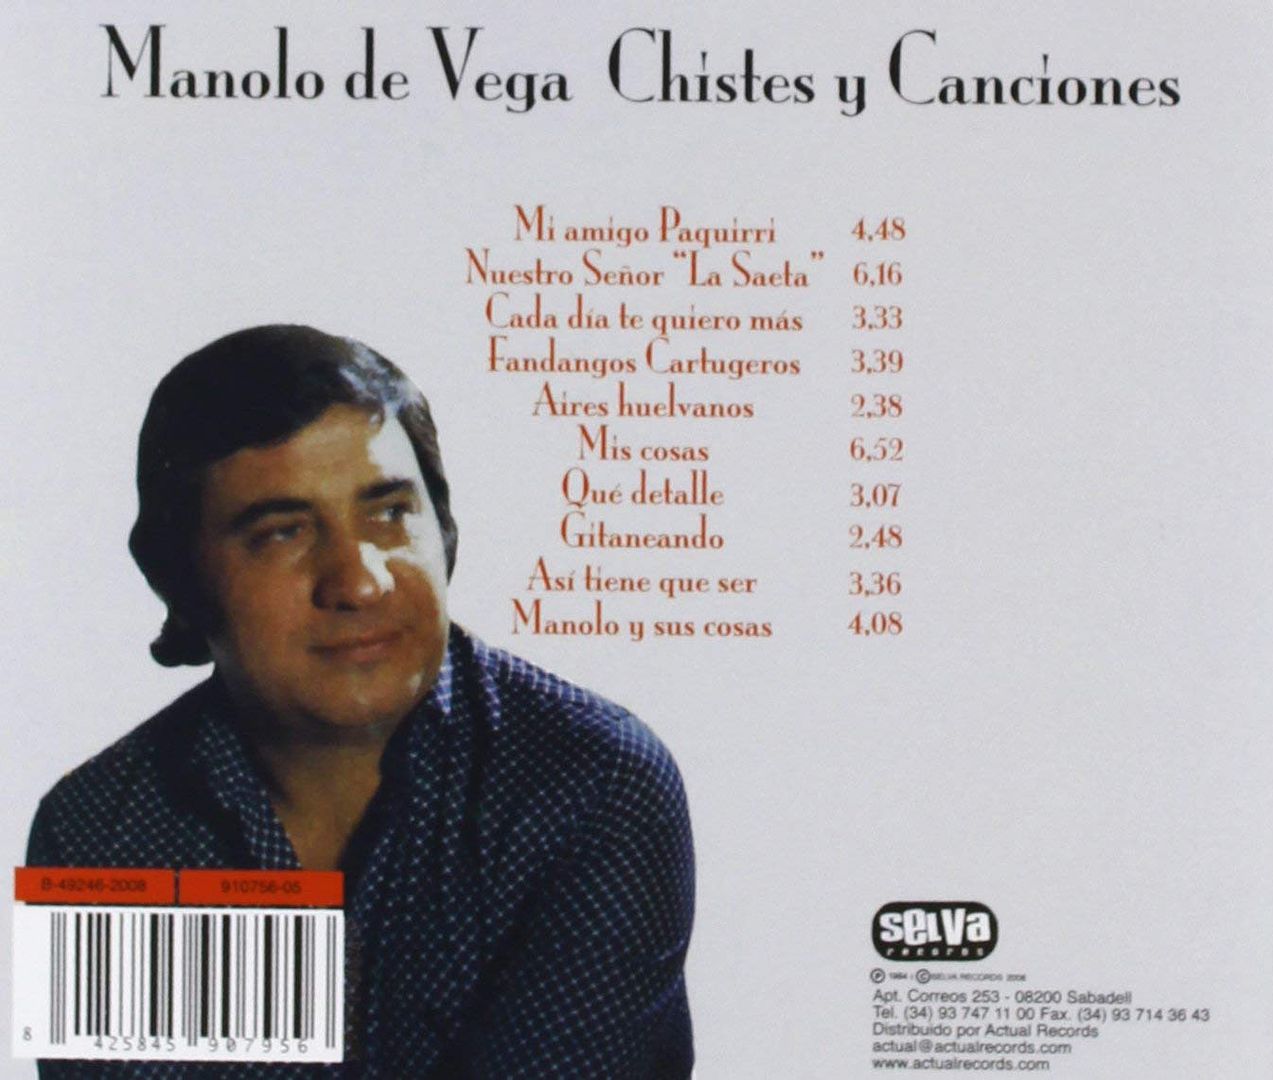 71daVAu42tL SL1345  - Manolo de Vega - Chistes Y Canciones (2009)